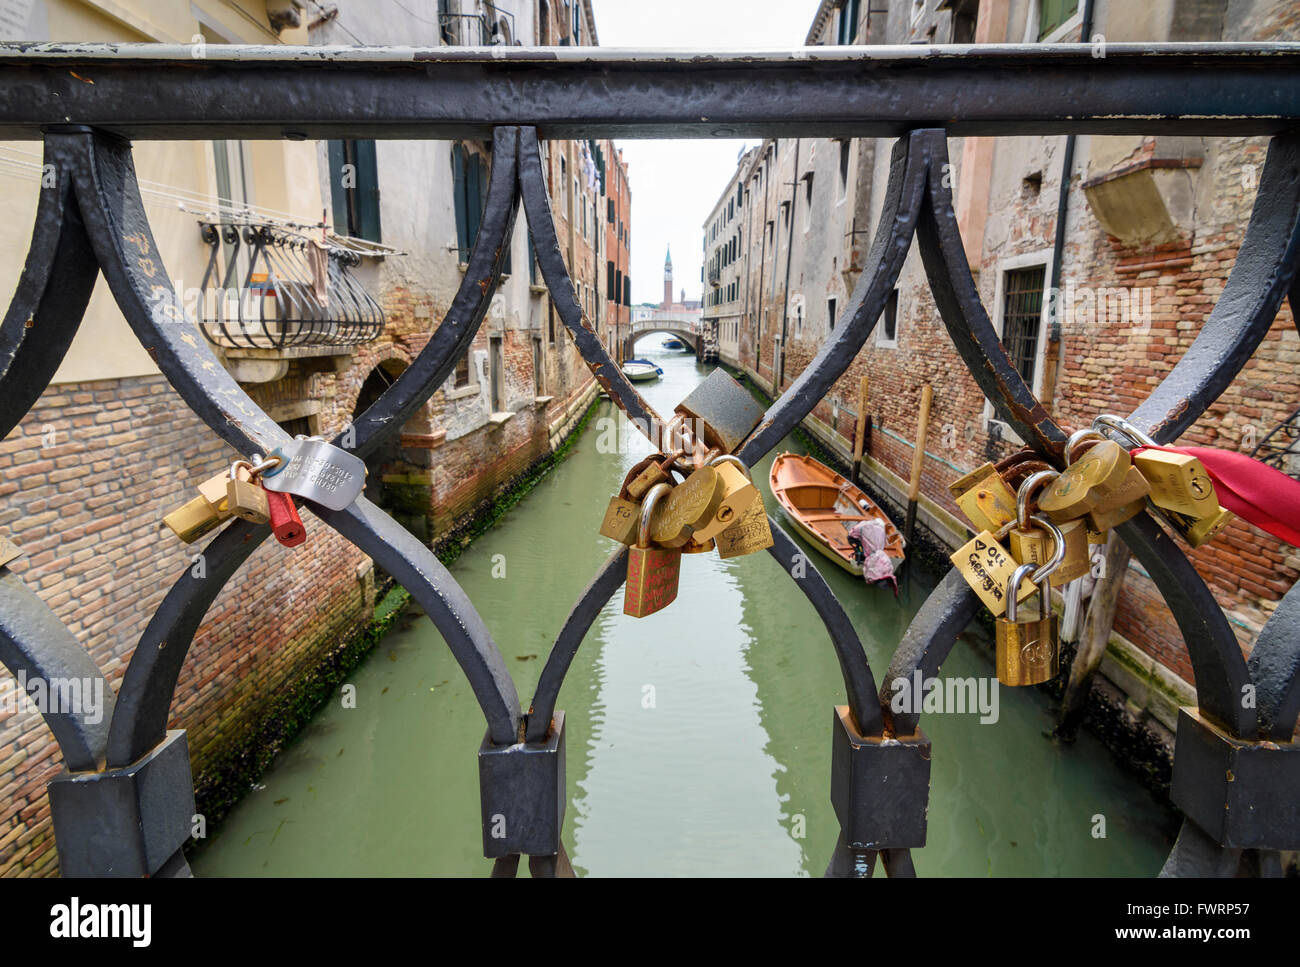 Love locks on the railings of a bridge over the Rio de la Pleta, Calle de la Pieta, Castello, Venice, Italy Stock Photo